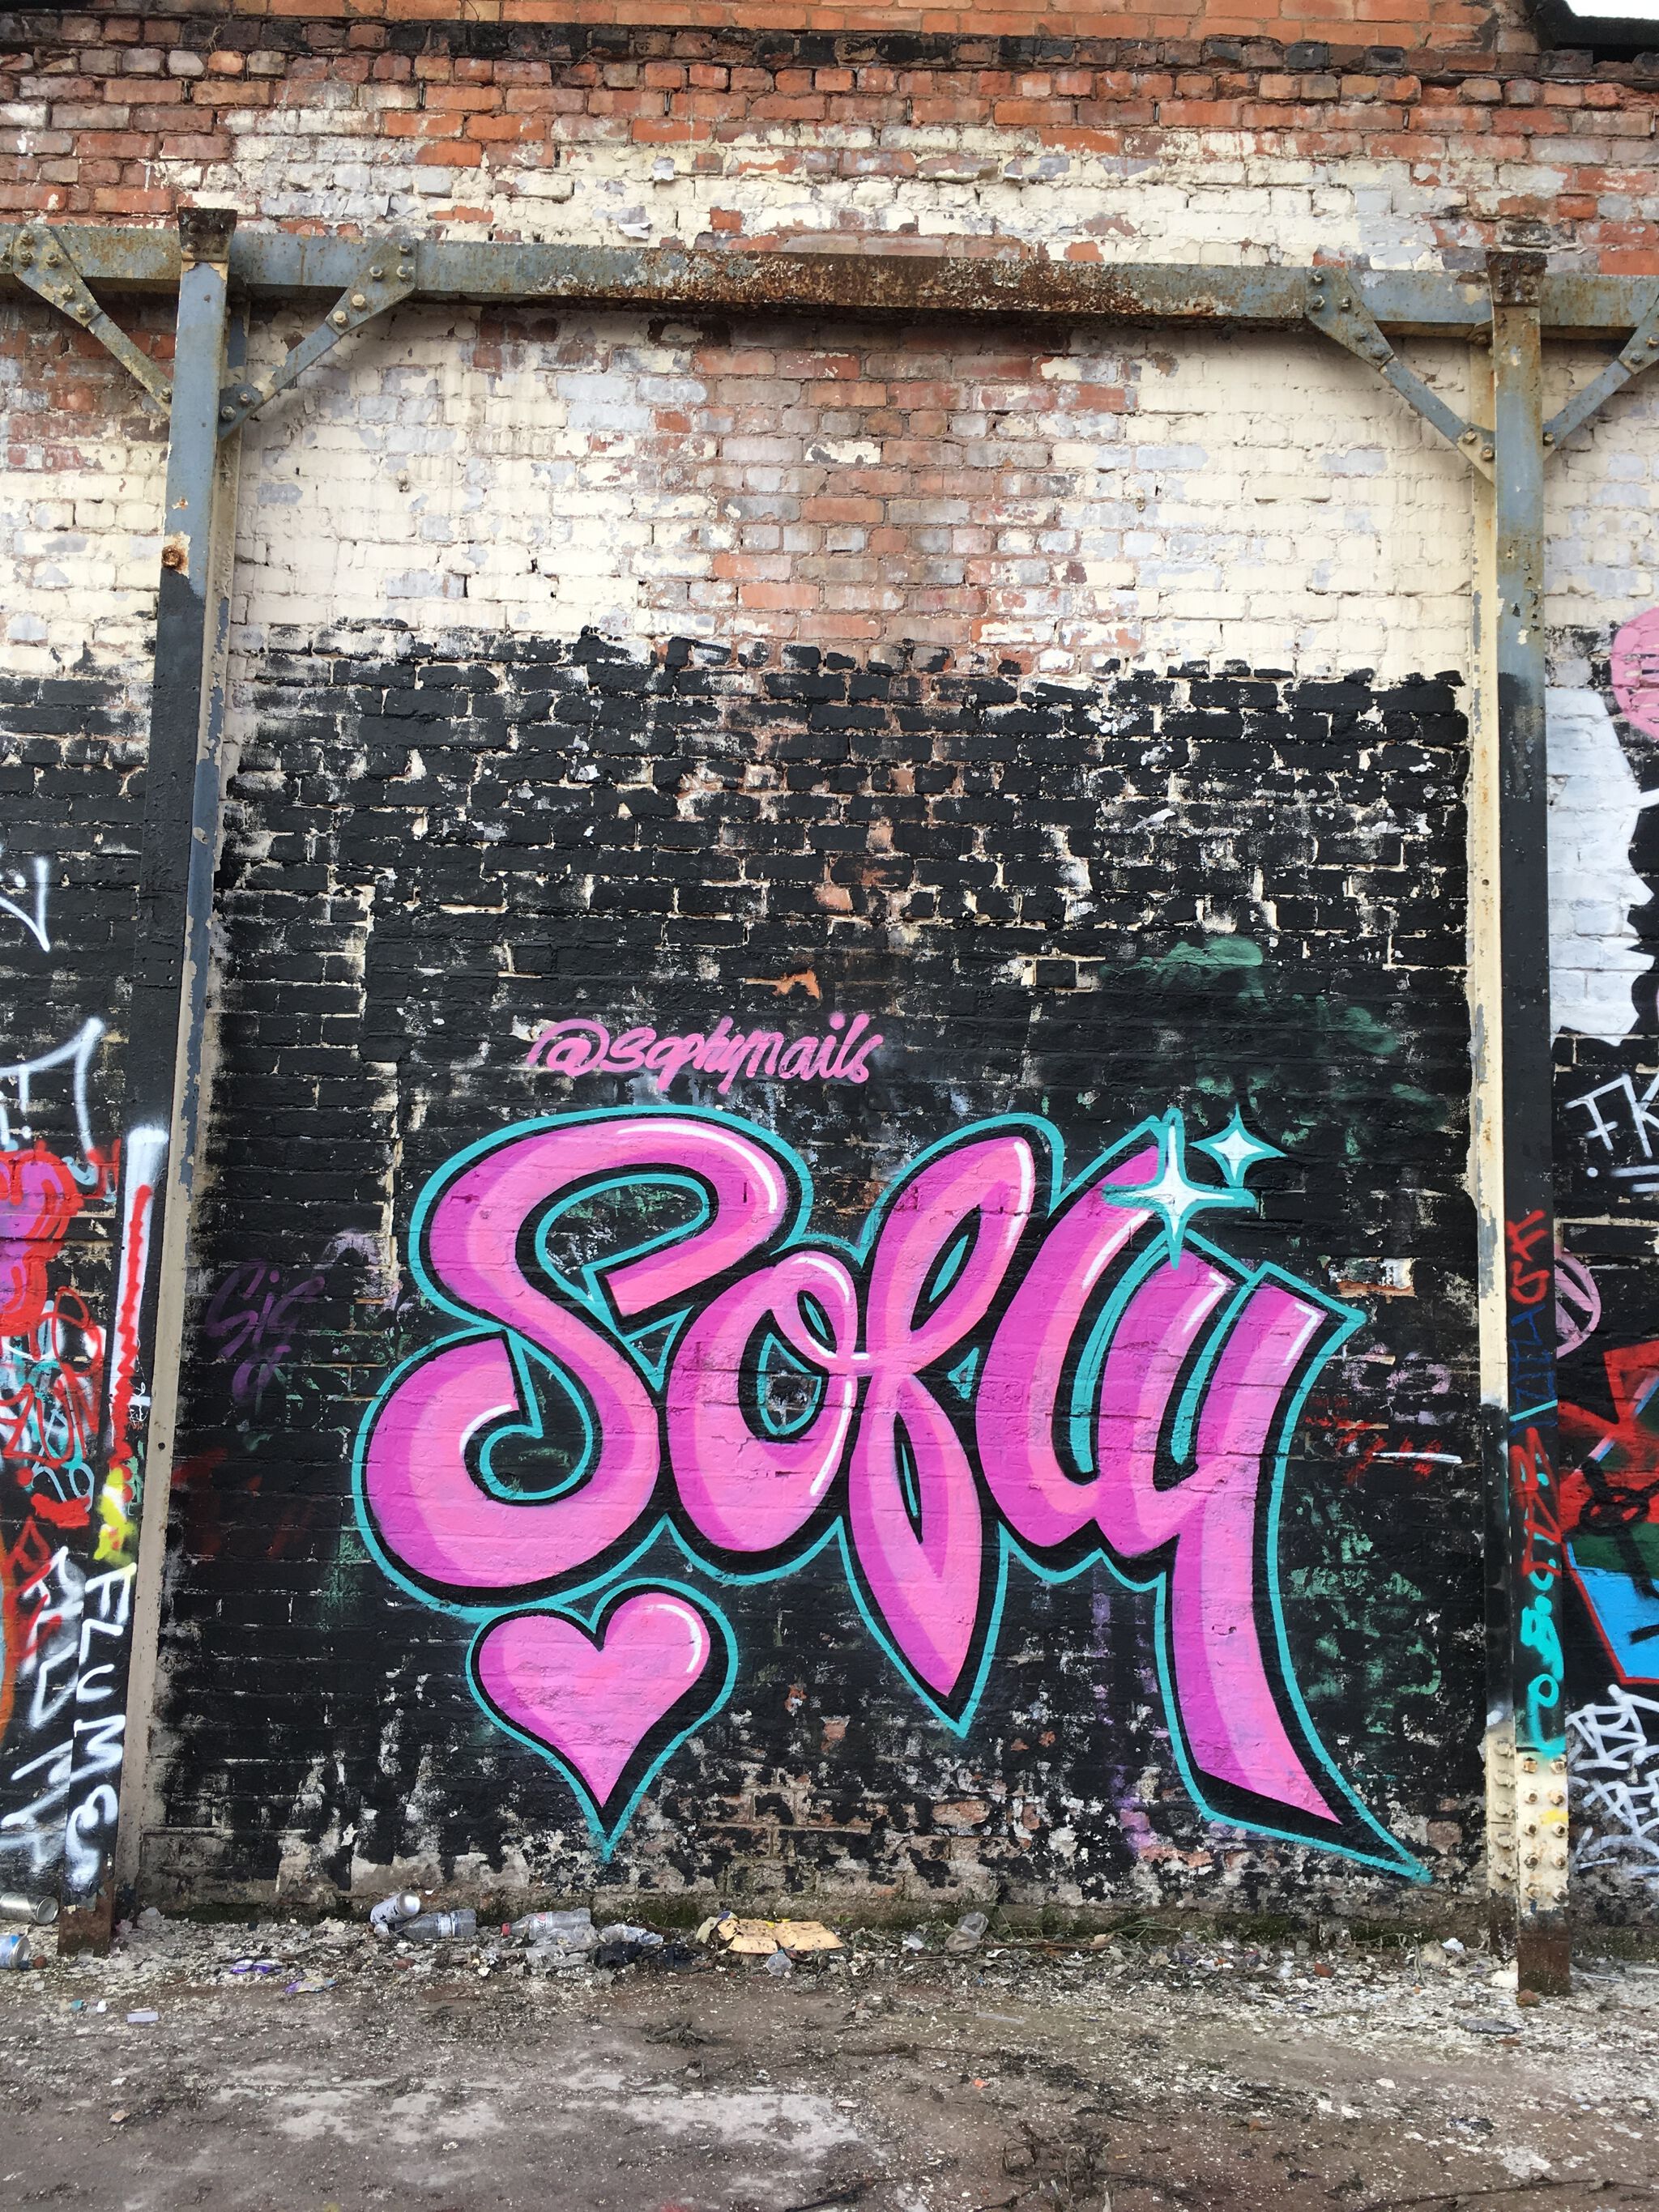 Mixture of artists&mdash;Birmingham Graffiti Wall 